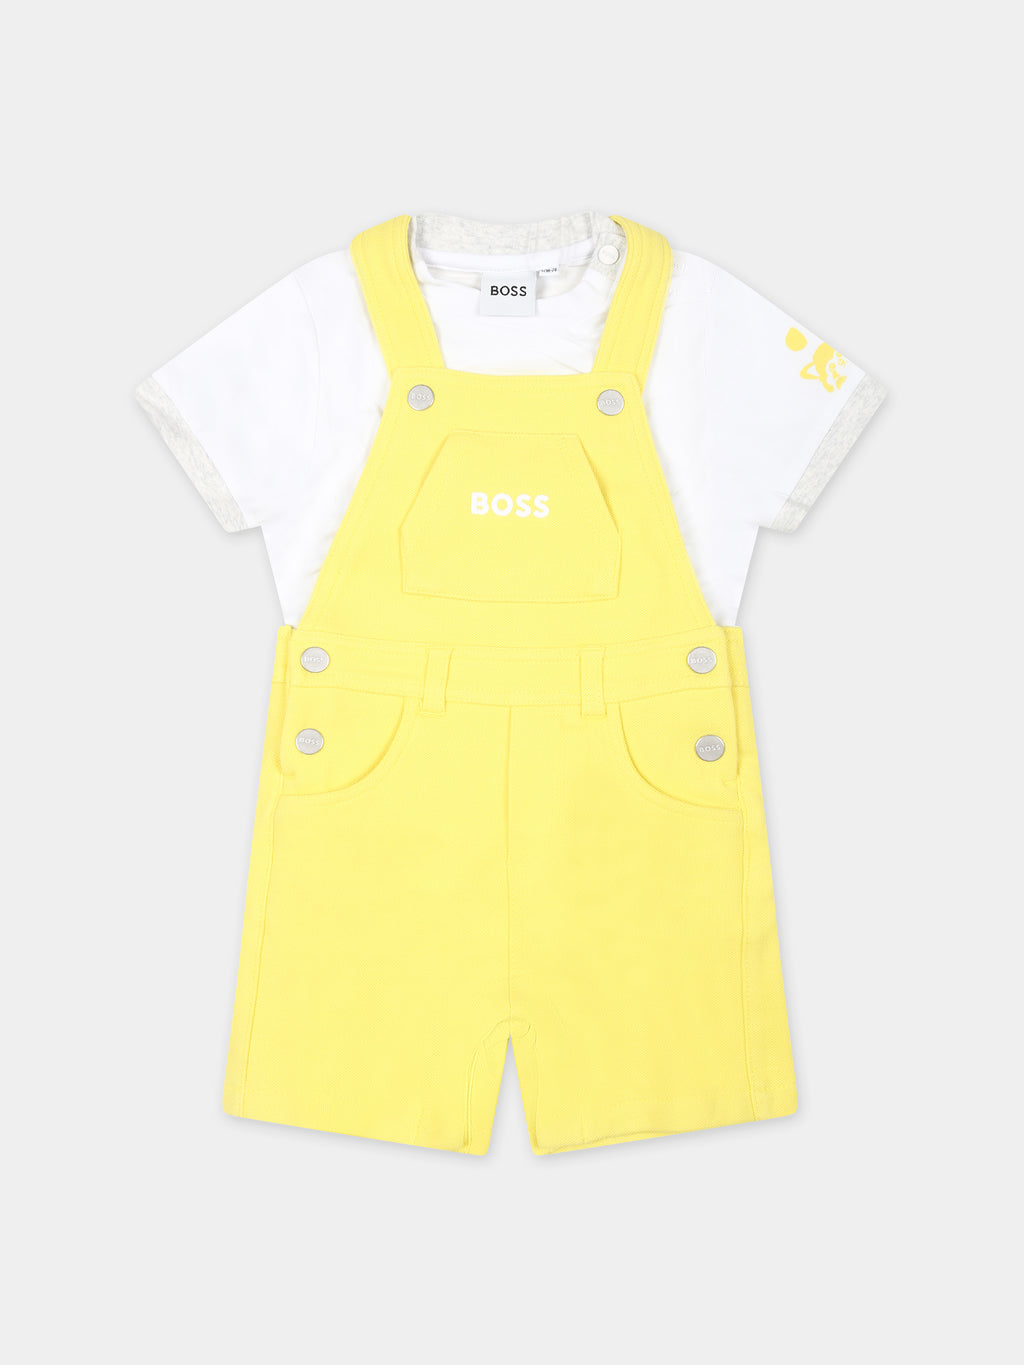 Ensemble jaune pour bébé garçon avec logo